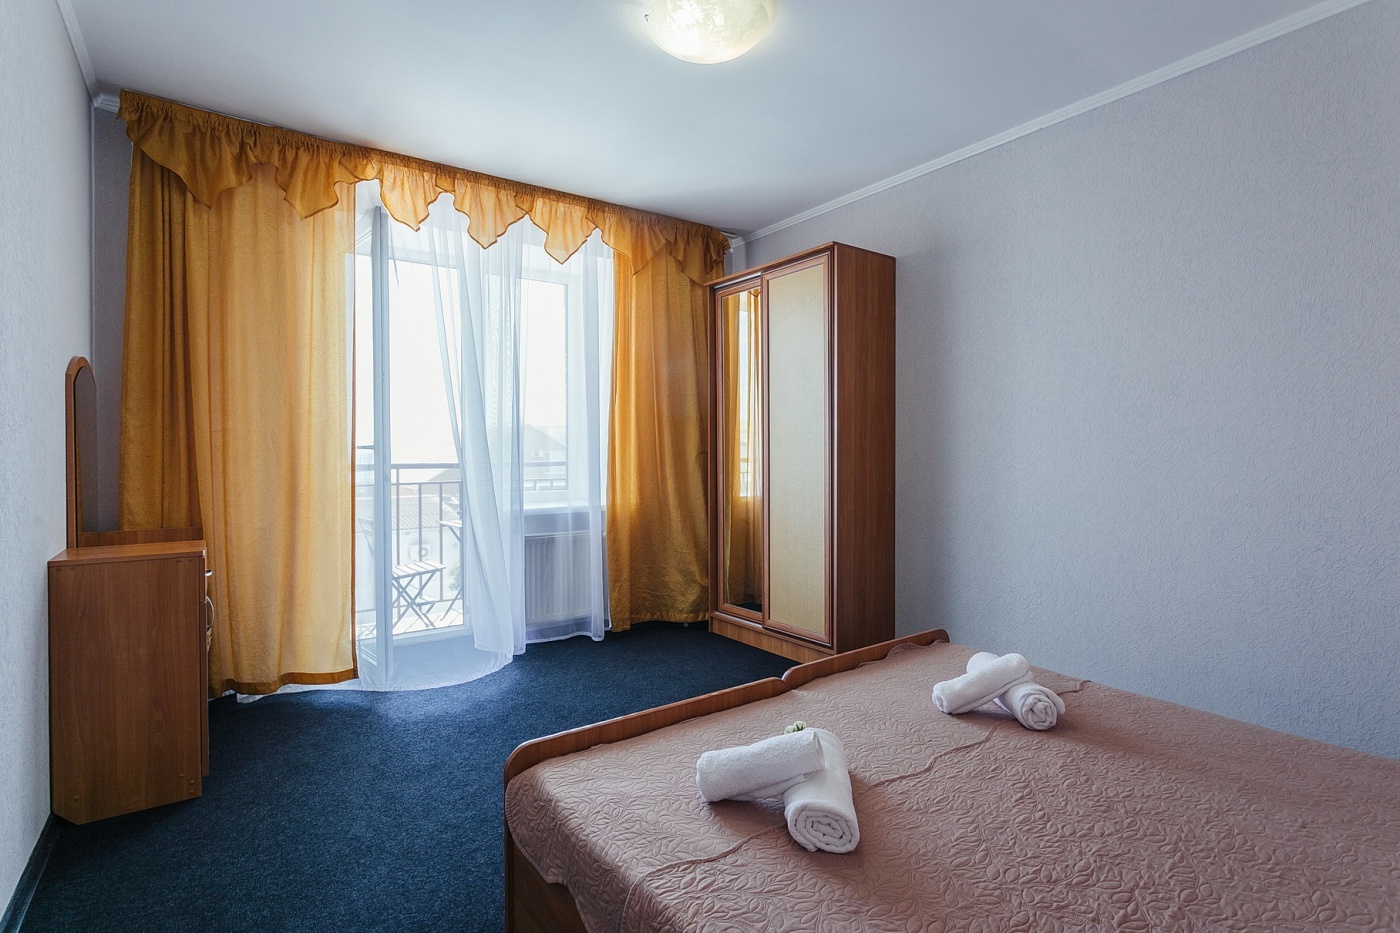  Отель «Бригантина» Республика Крым Номер «Двухкомнатный Комфорт» 2-местный, фото 3